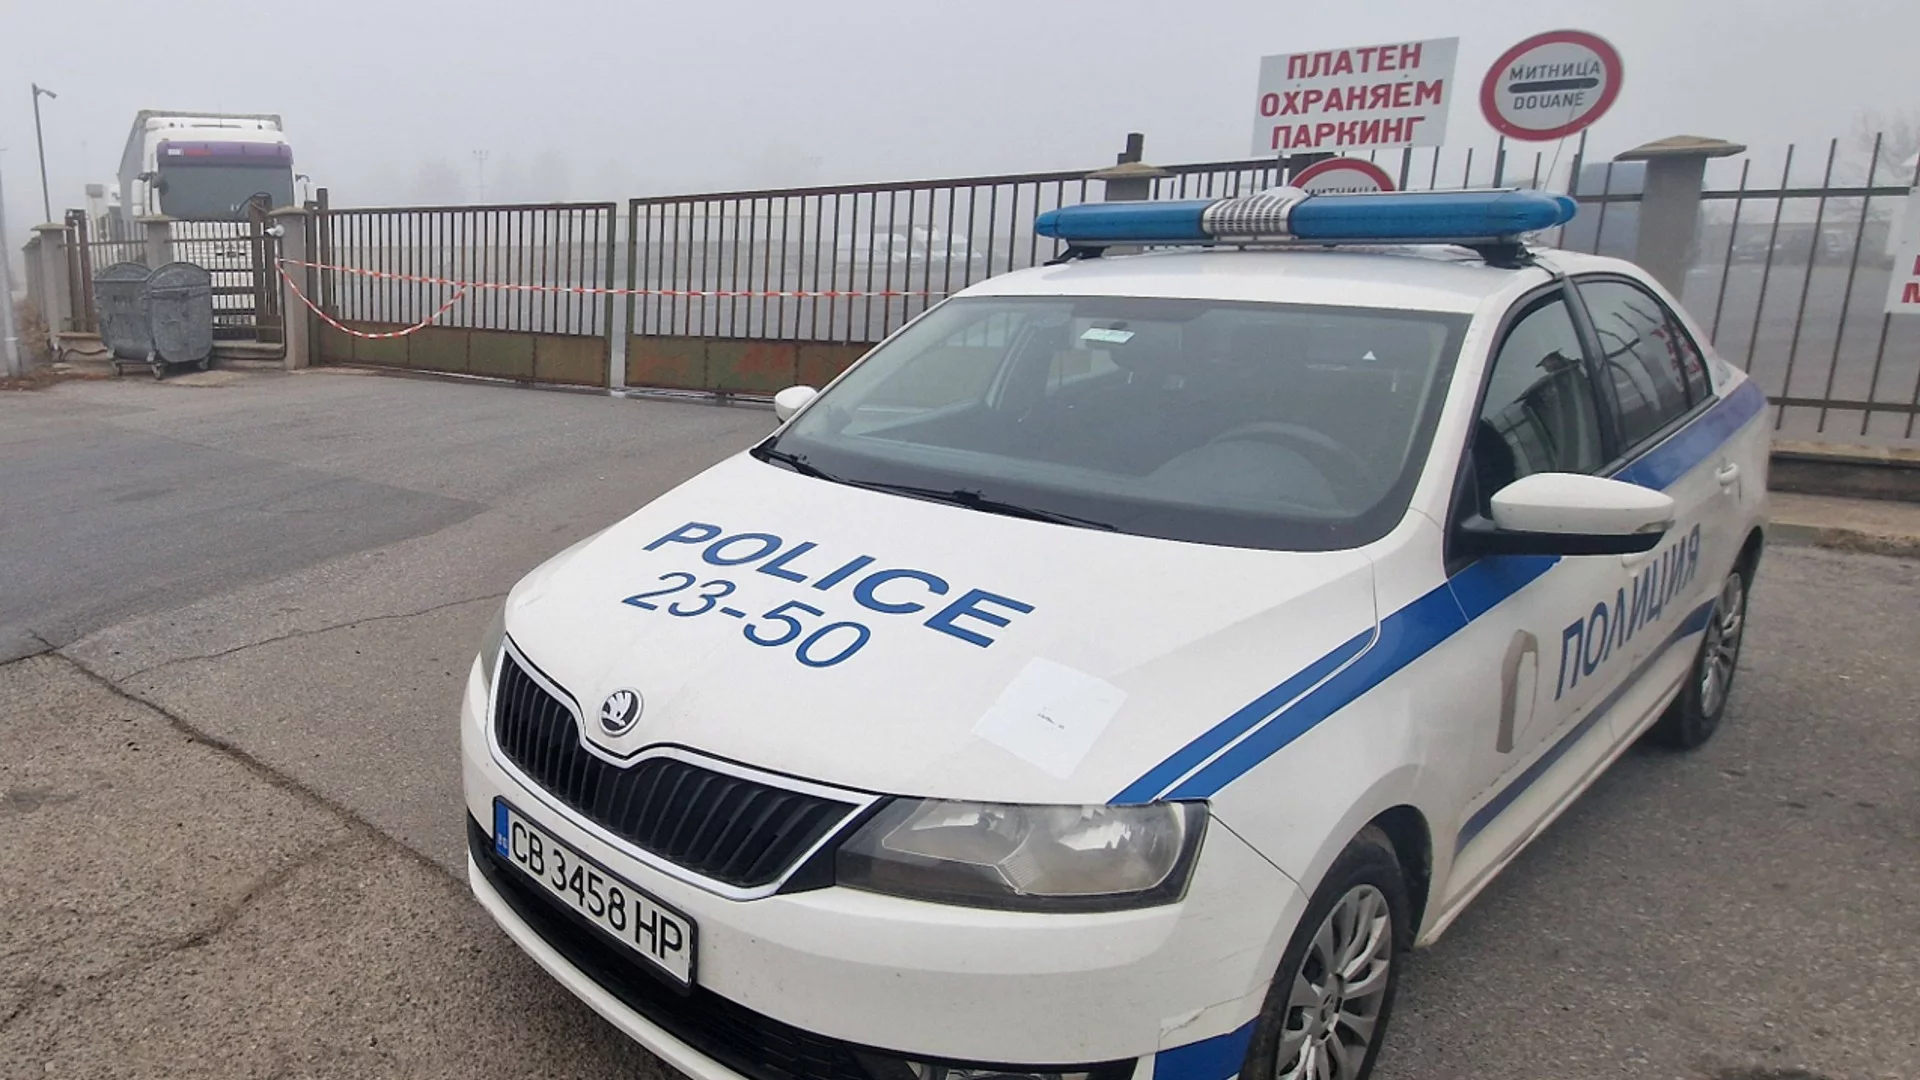 Полицай и двама граждани са пострадали при гонката във Велико Търново